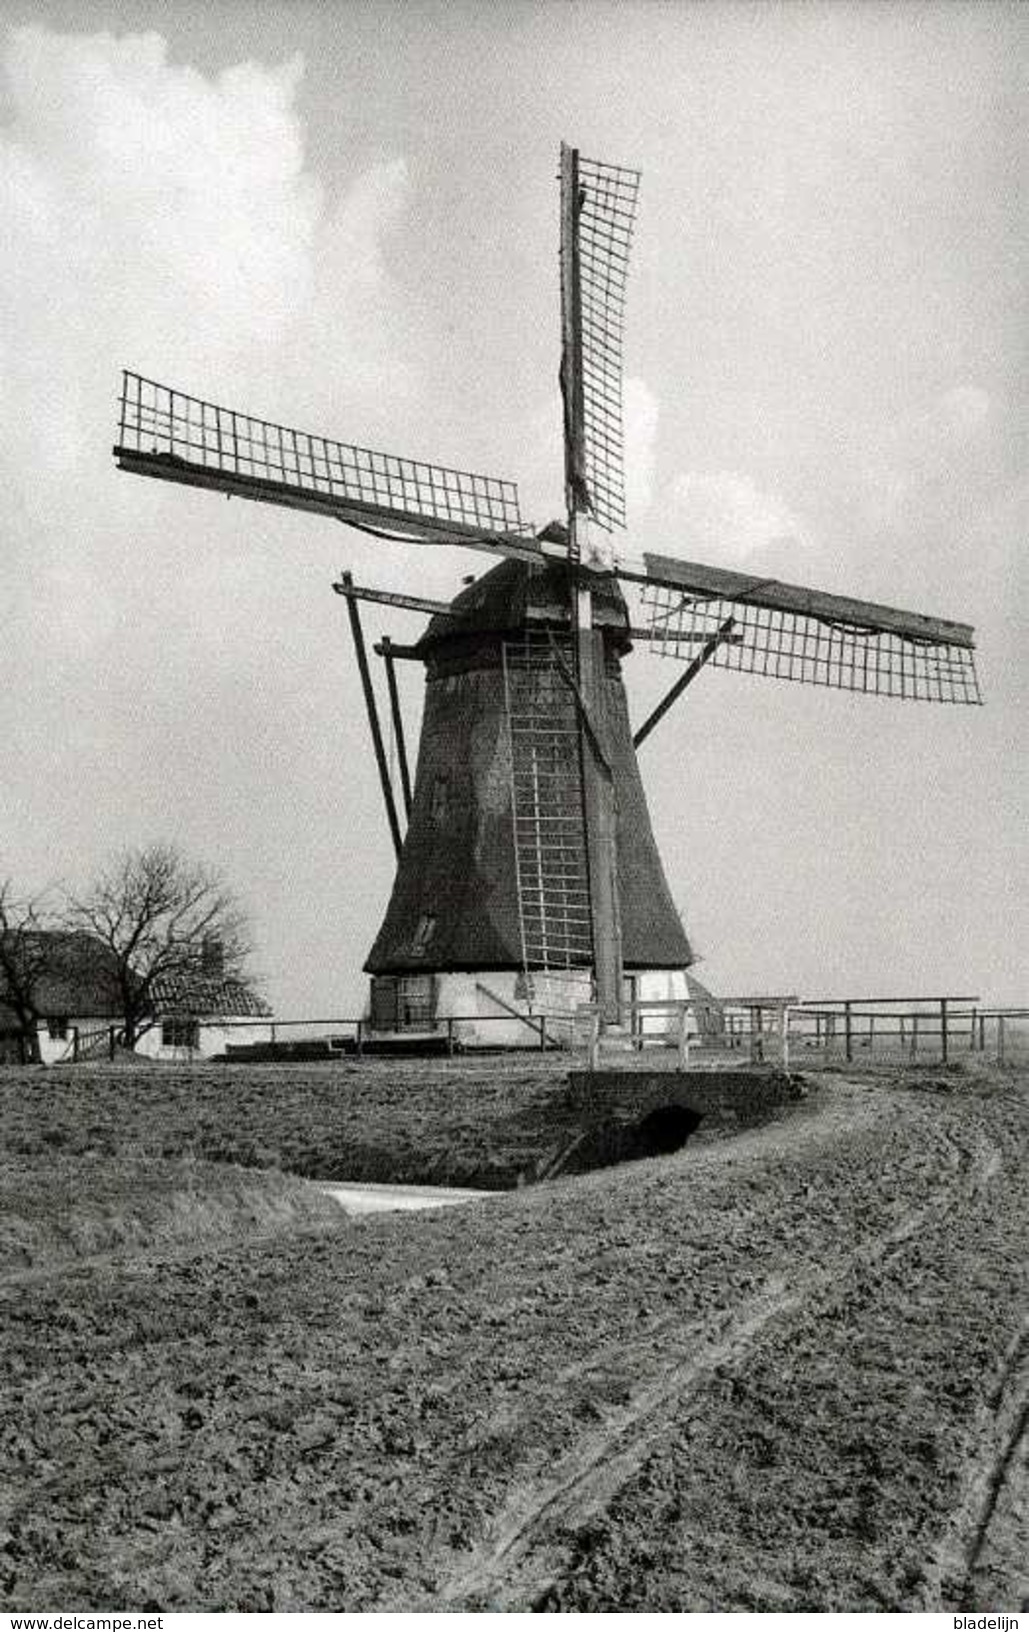 NIEUWAAL Bij Zaltbommel (Gld.) - Molen/moulin - De Verdwenen Nieuwaalse Poldermolen In 1930. TOP !!! - Zaltbommel